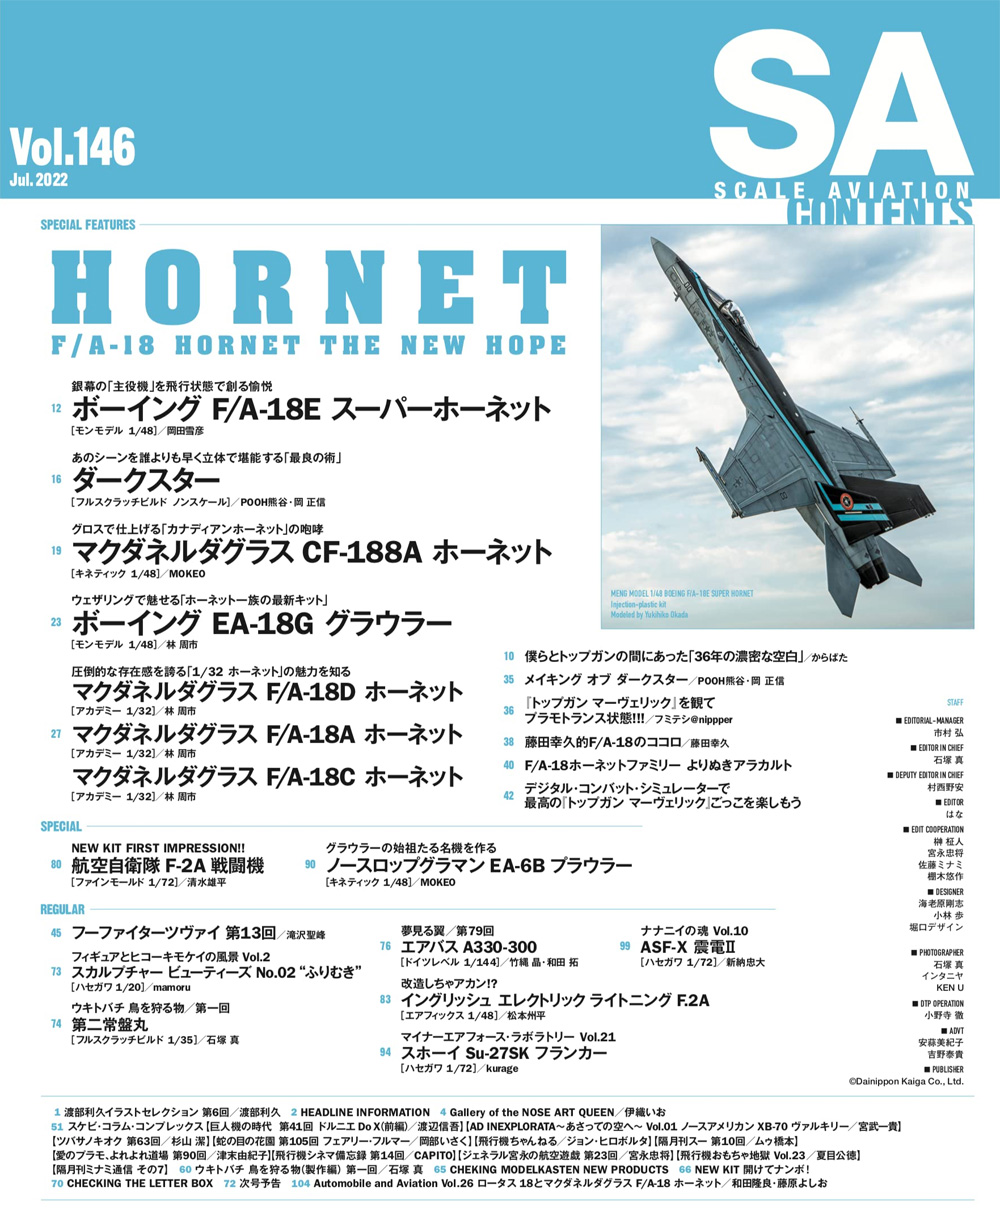 スケール アヴィエーション 2022年7月号 Vol.146 雑誌 (大日本絵画 Scale Aviation No.Vol.146) 商品画像_1